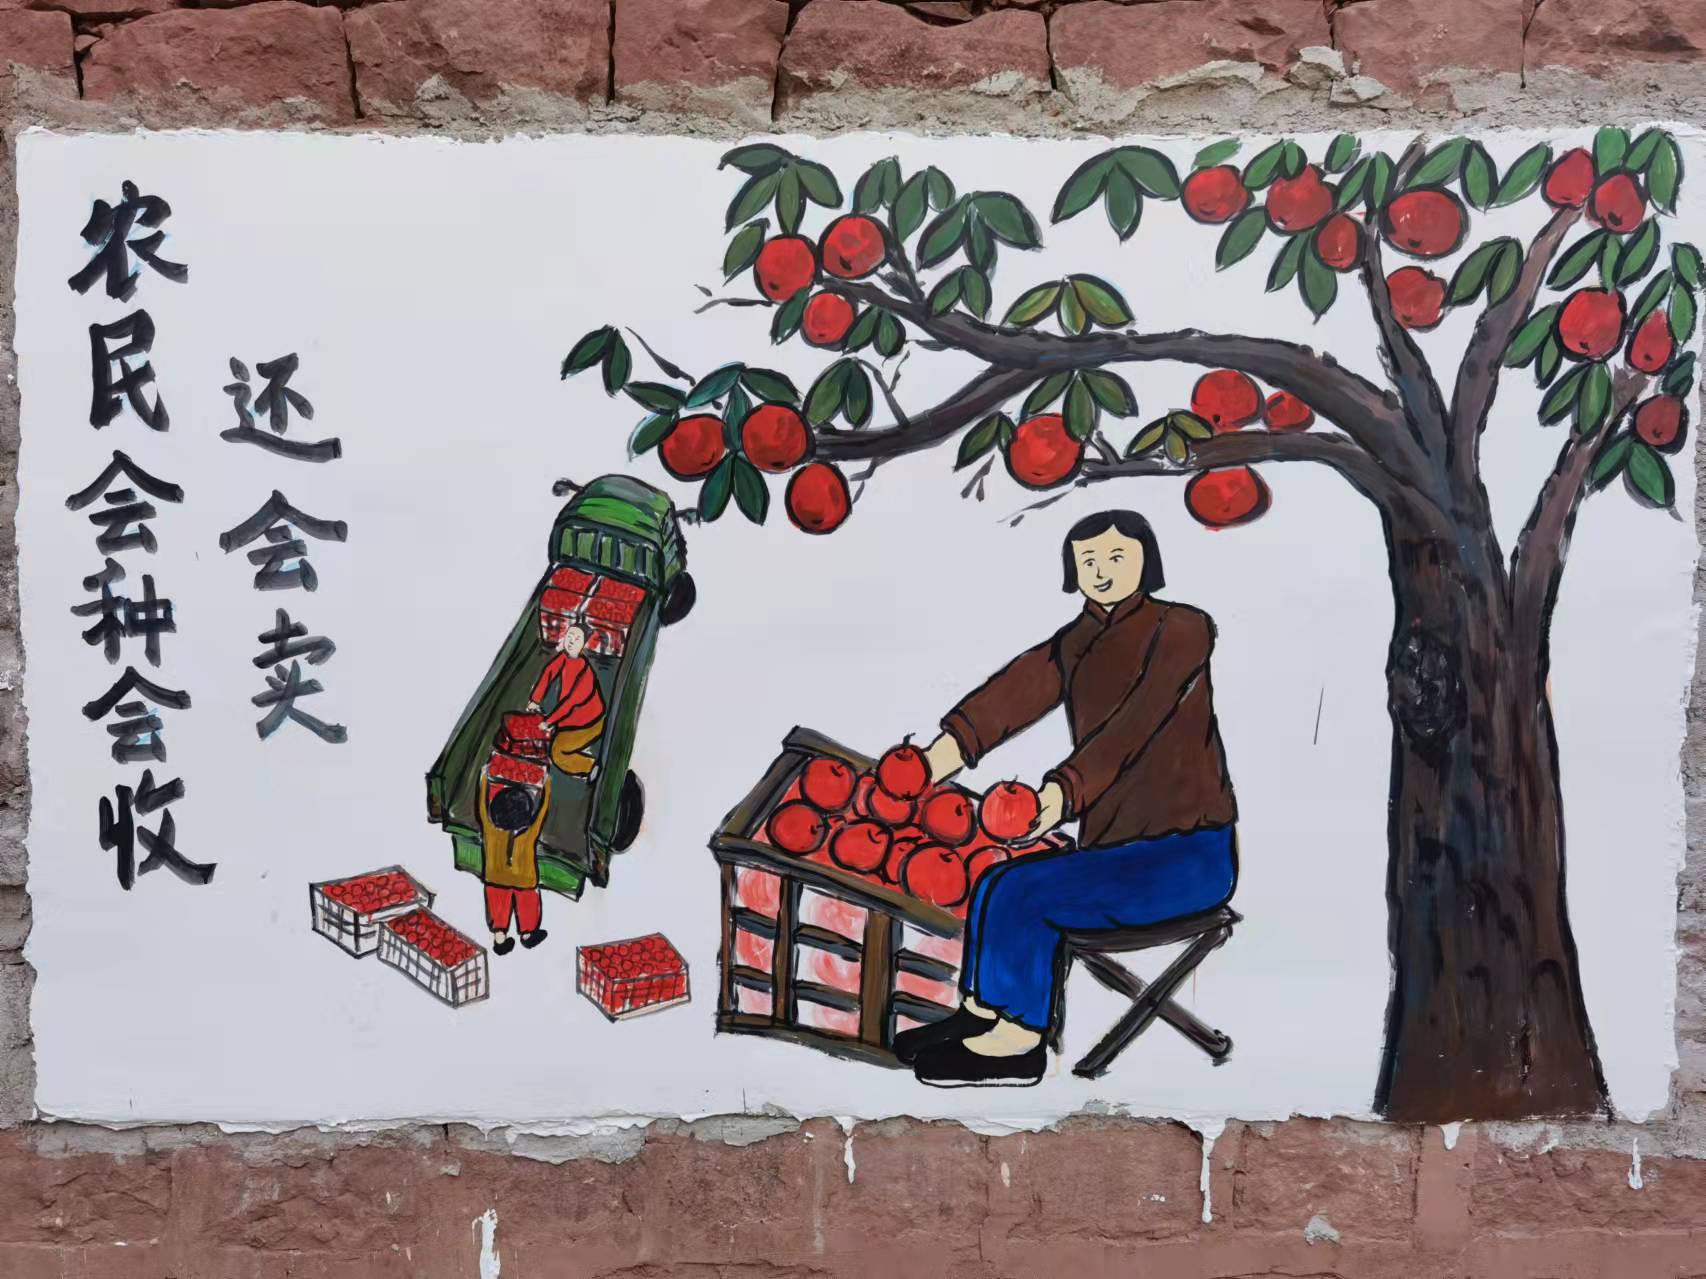 羊街镇：彩绘为美丽乡村建设“代言”-元谋县人民政府